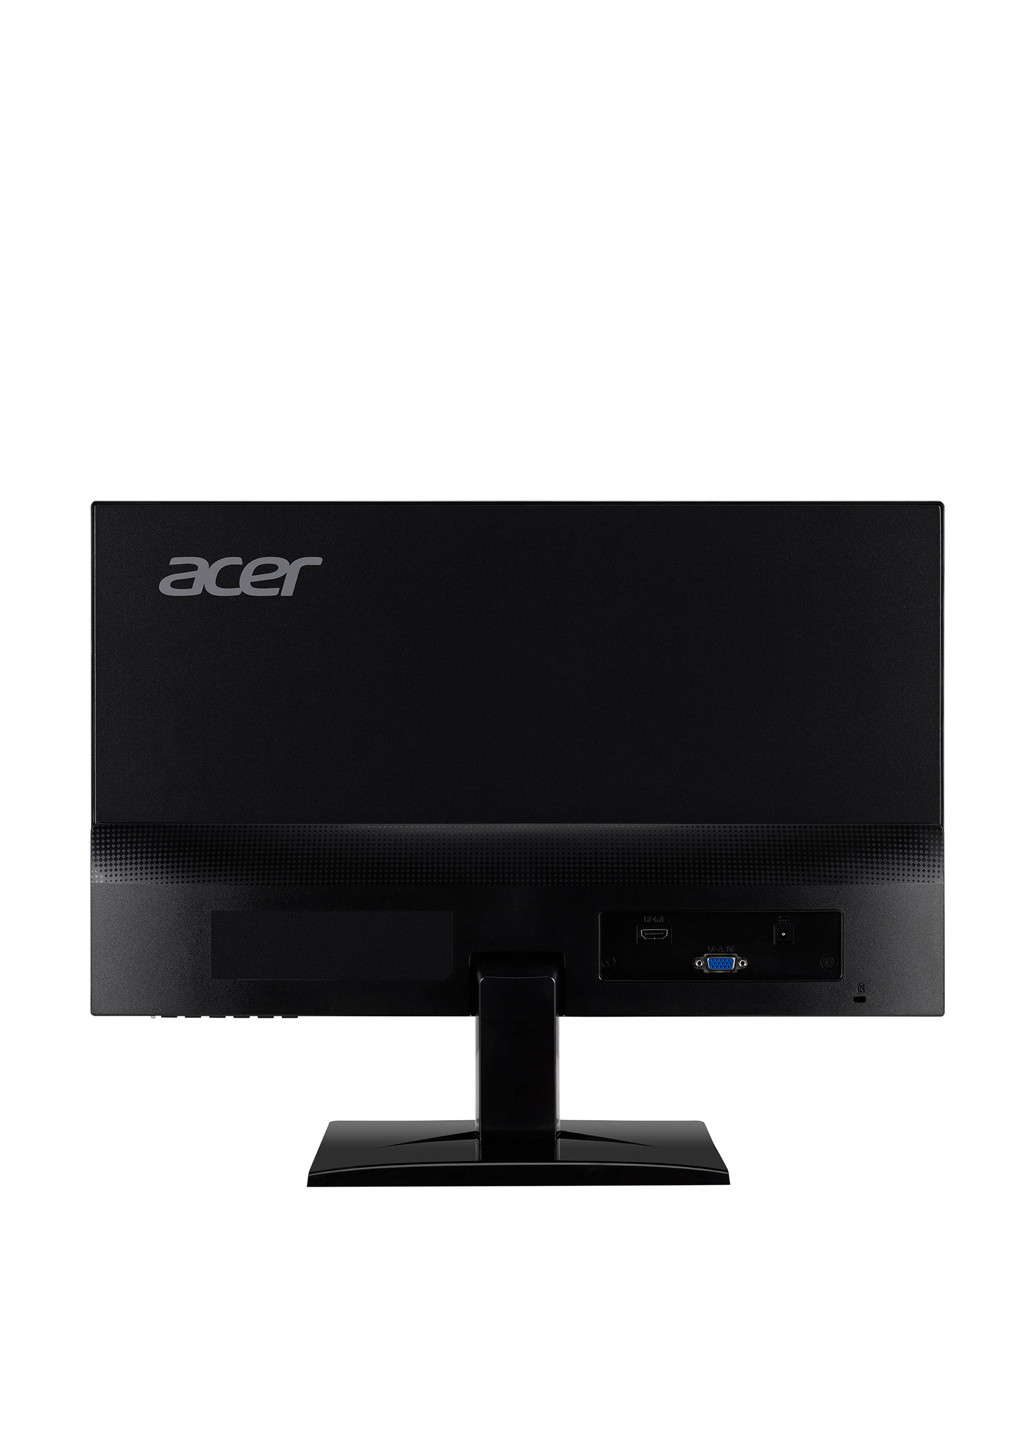 Монитор 23" HA230bi (UM.VW0EE.001) Acer монитор 23" acer ha230bi (um.vw0ee.001) (130280666)